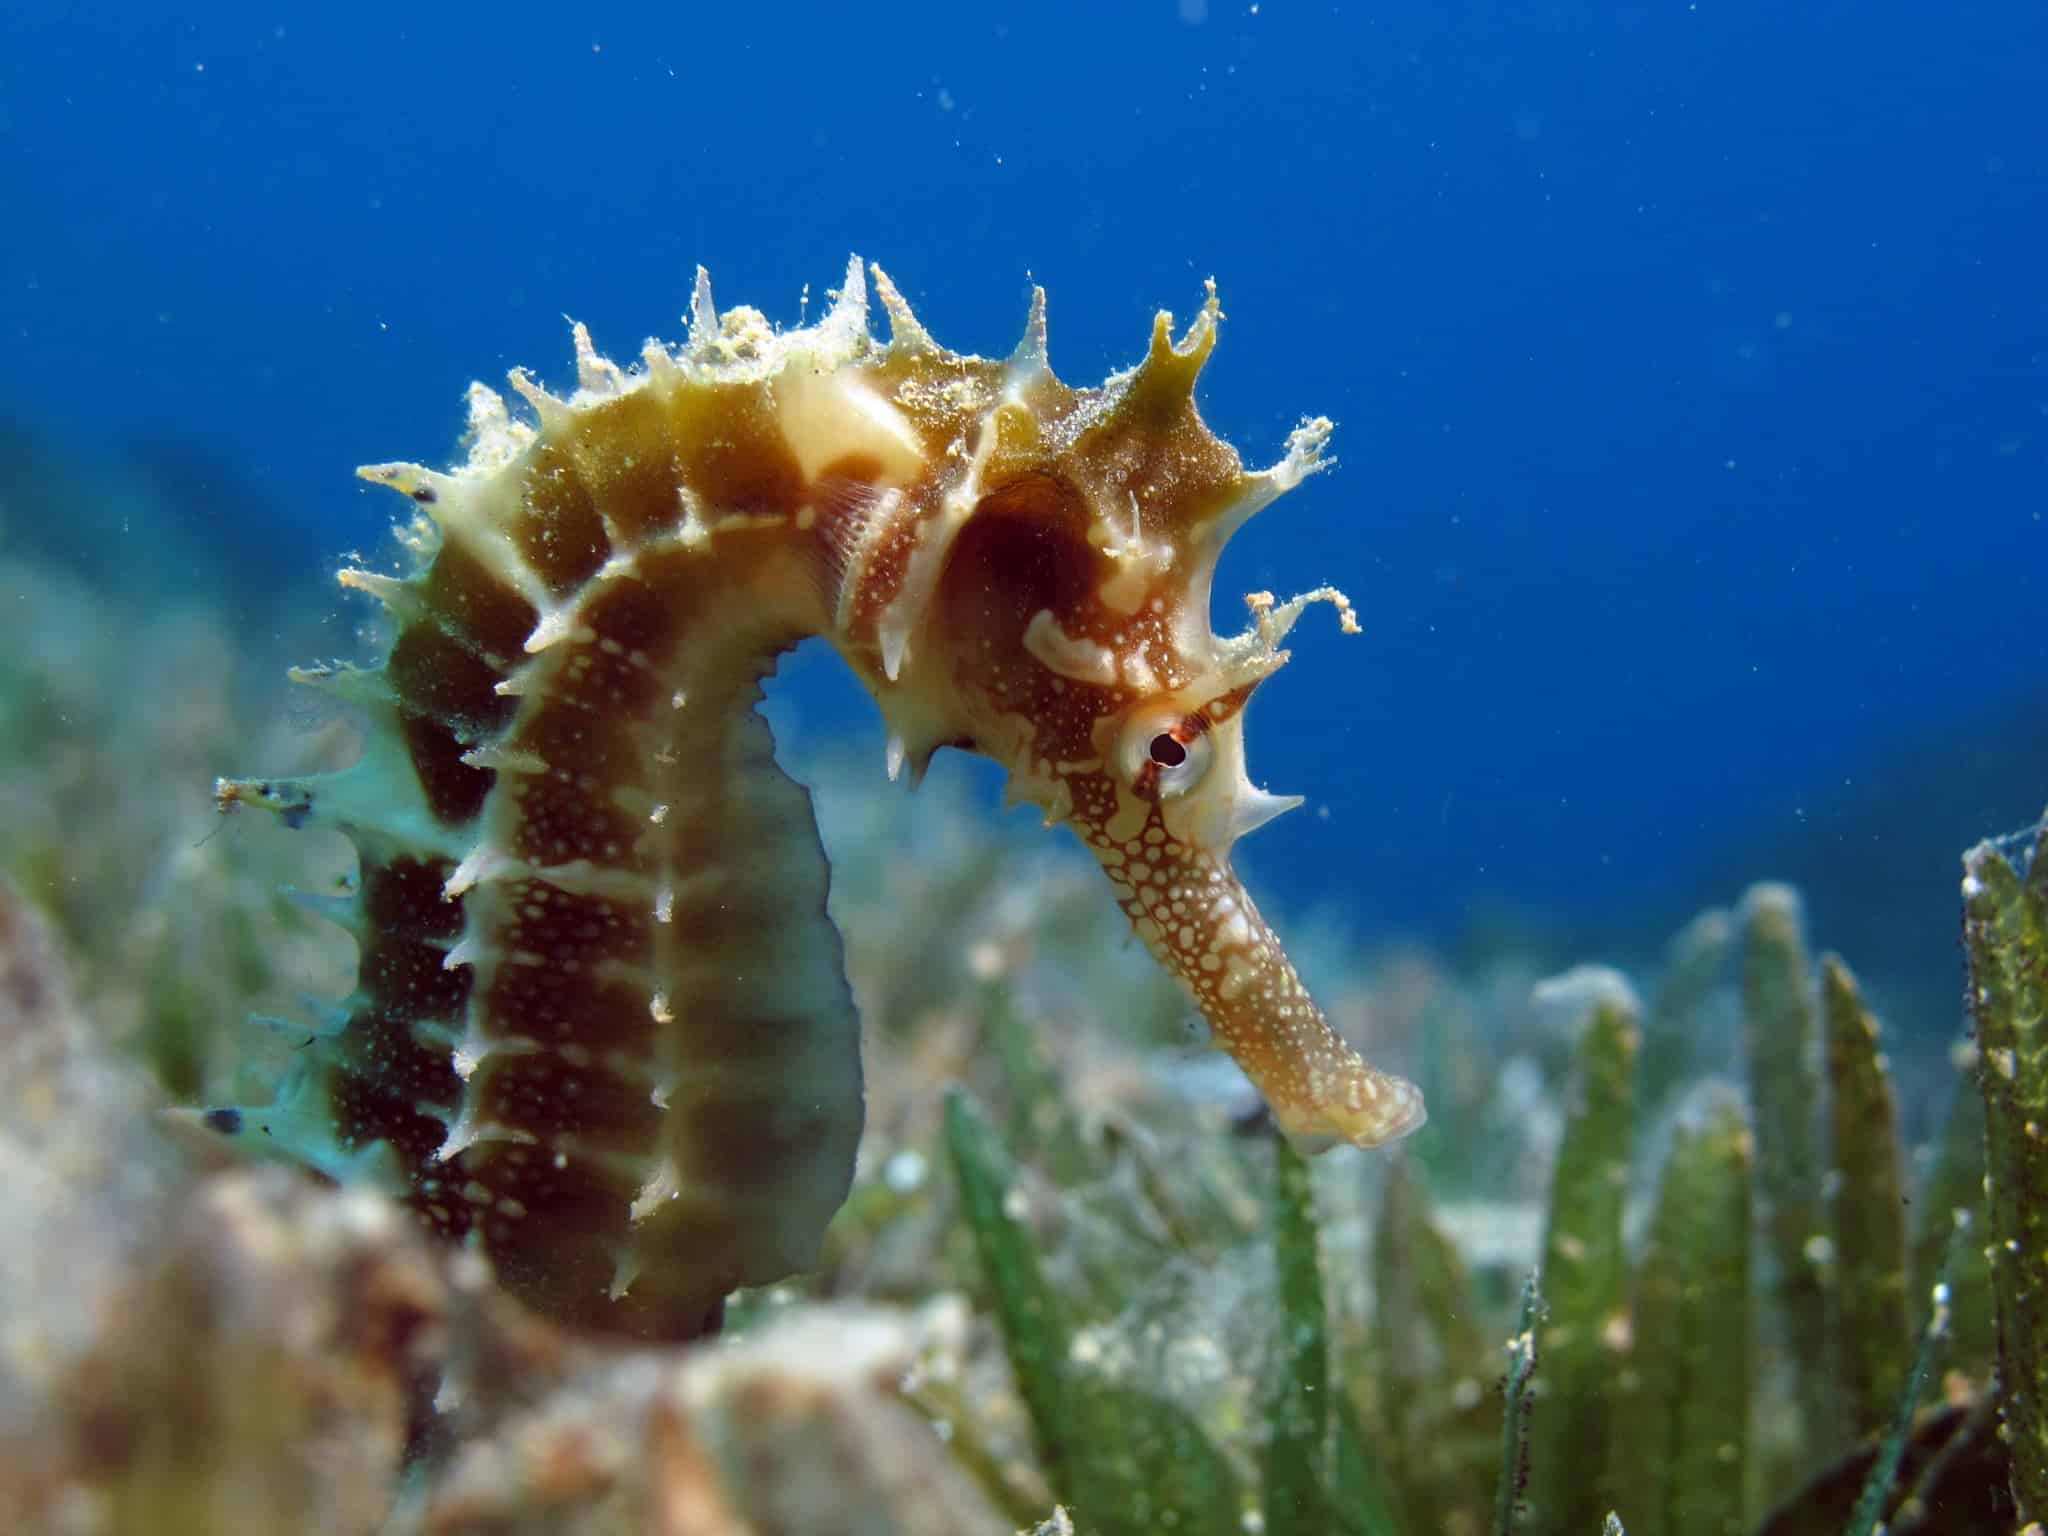 Are Seahorses Invertebrates